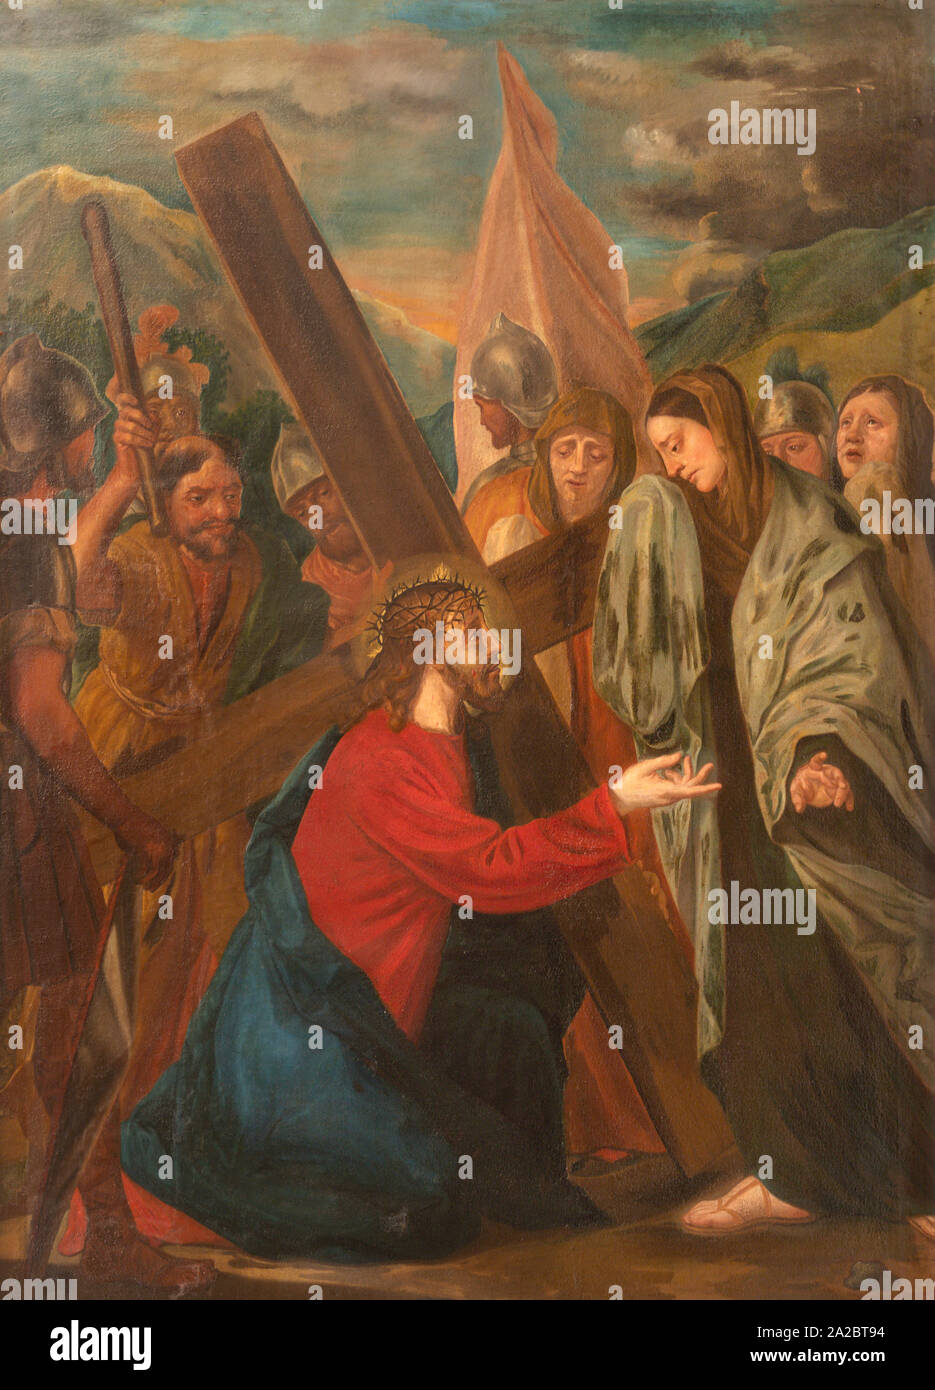 ARCO, ITALIEN - Juni 8, 2018: Das Gemälde Jesus begegnet den Frauen von Jerusalem (Teil ot Kreuzweg) in der Chiesa Collegiata dell'Assunta. Stockfoto